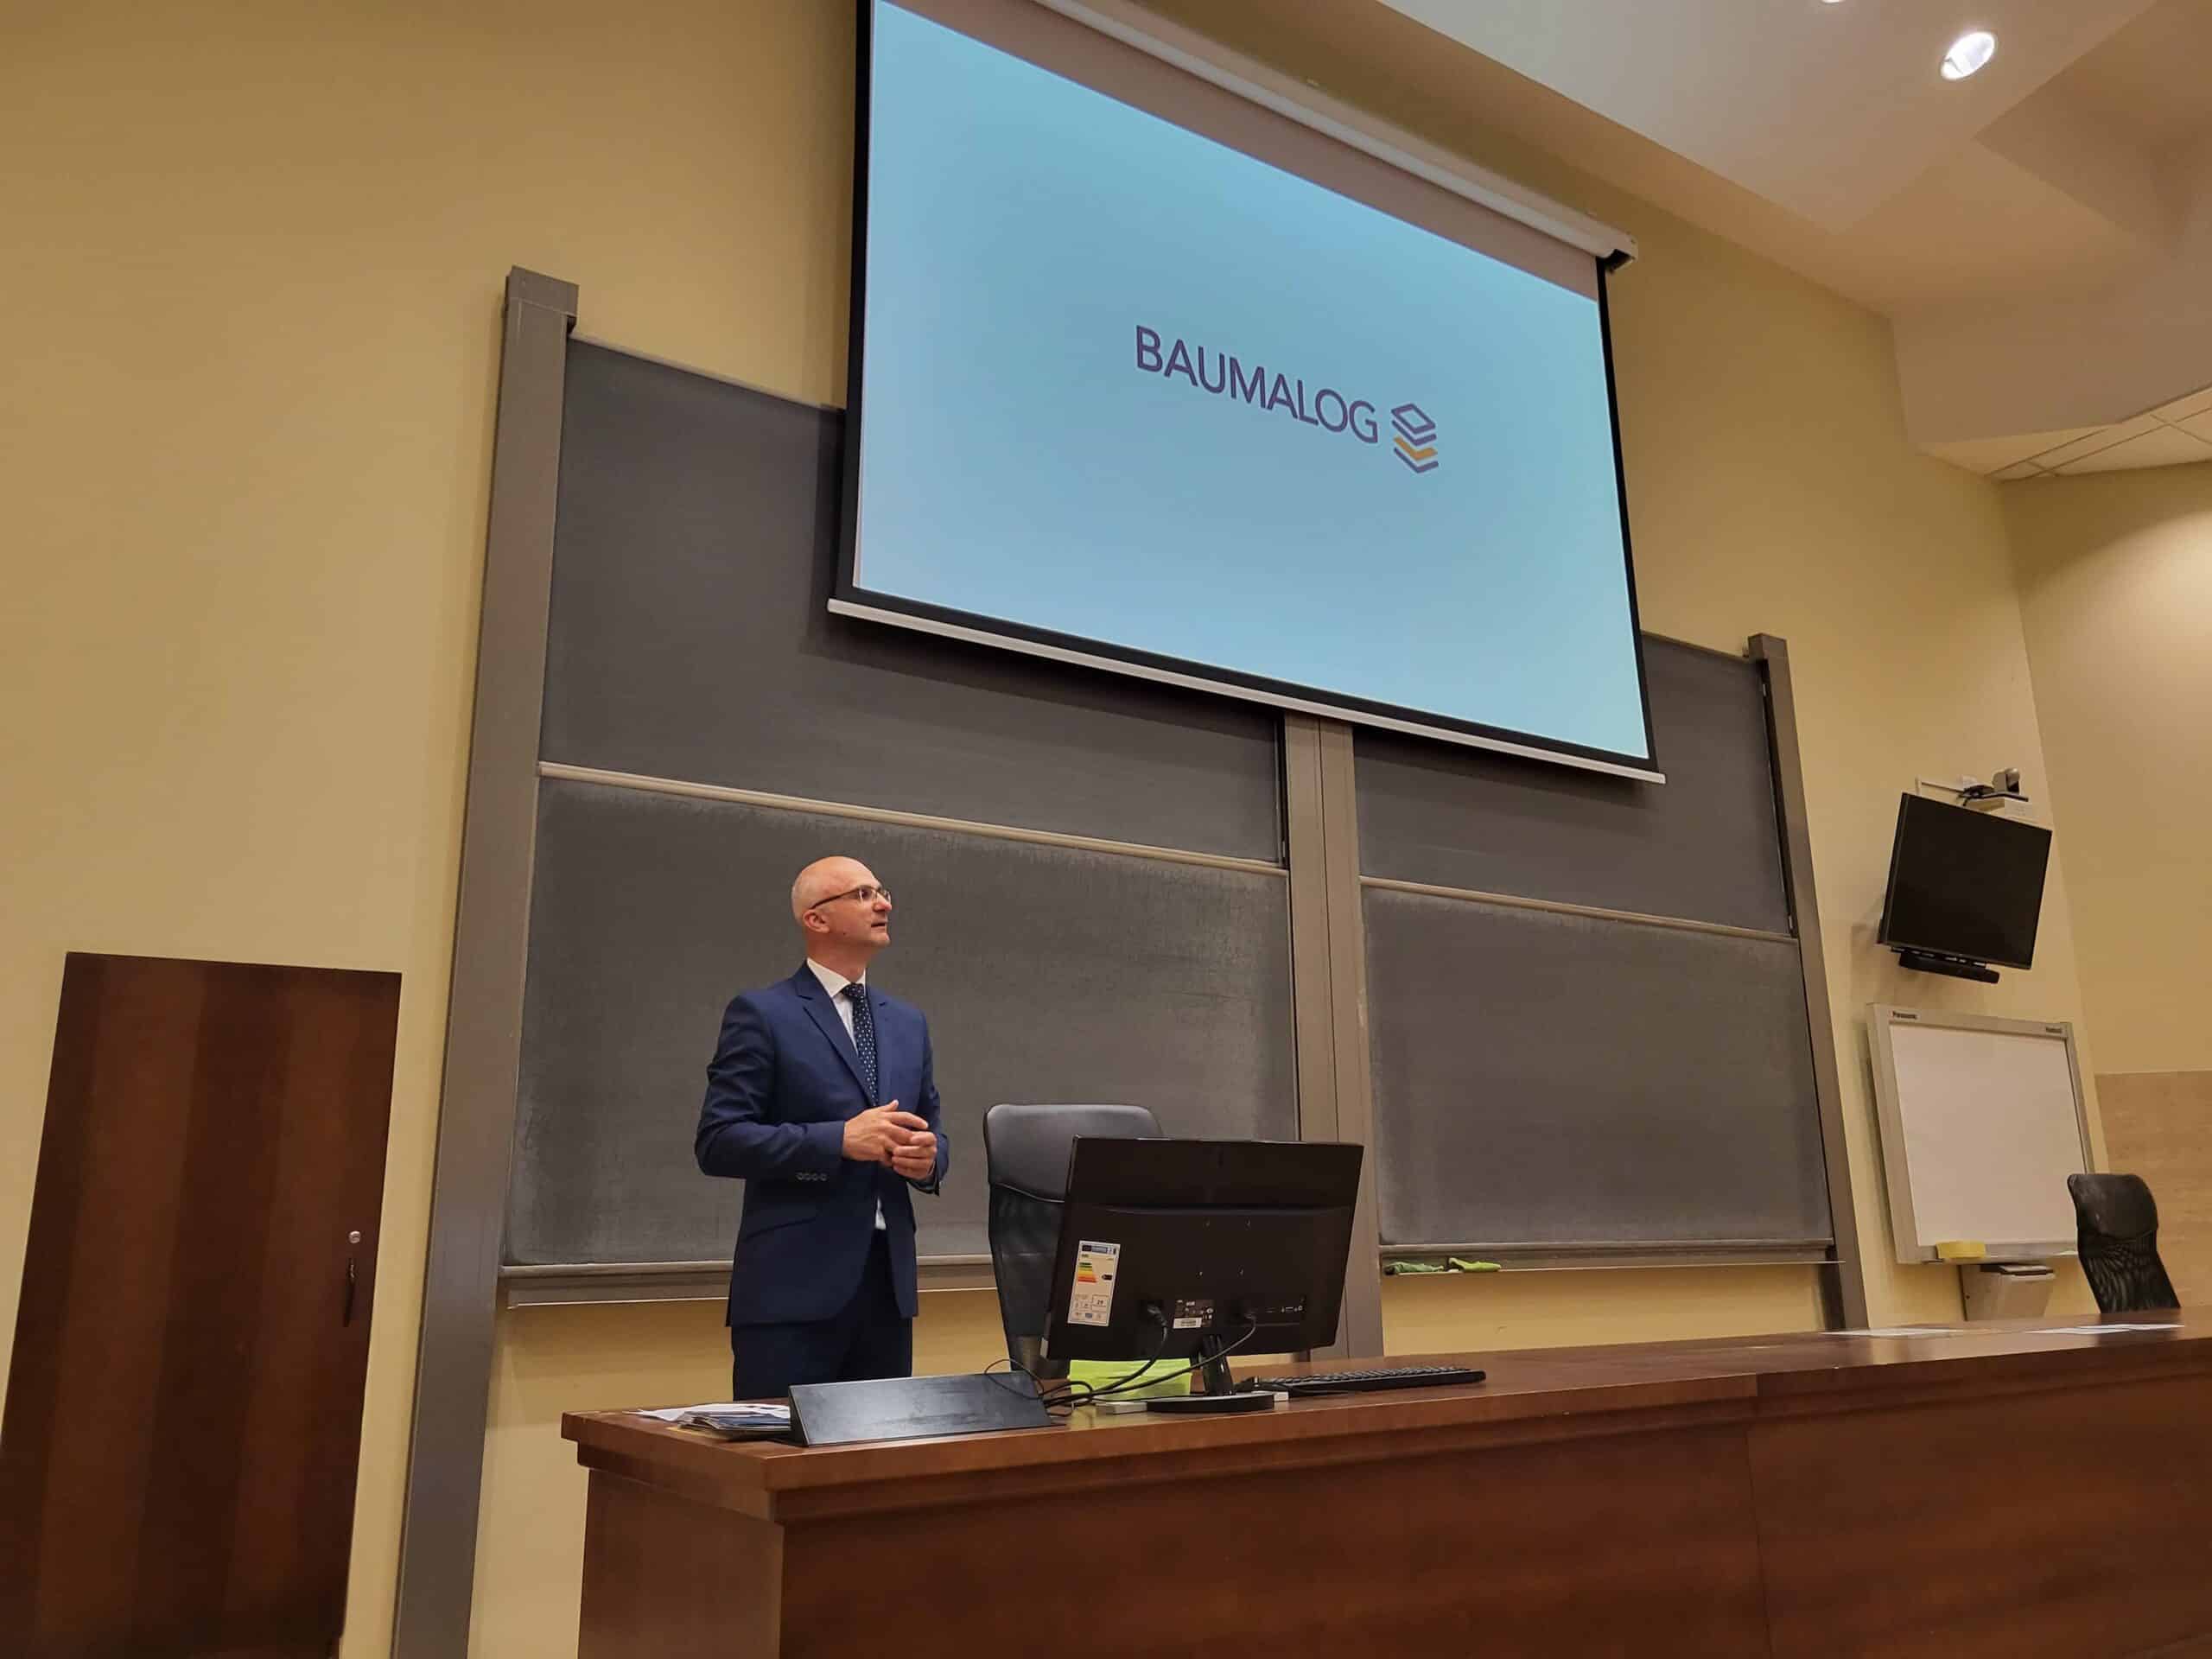 CEO Baumalog Marcin Kozłowski on the lecture